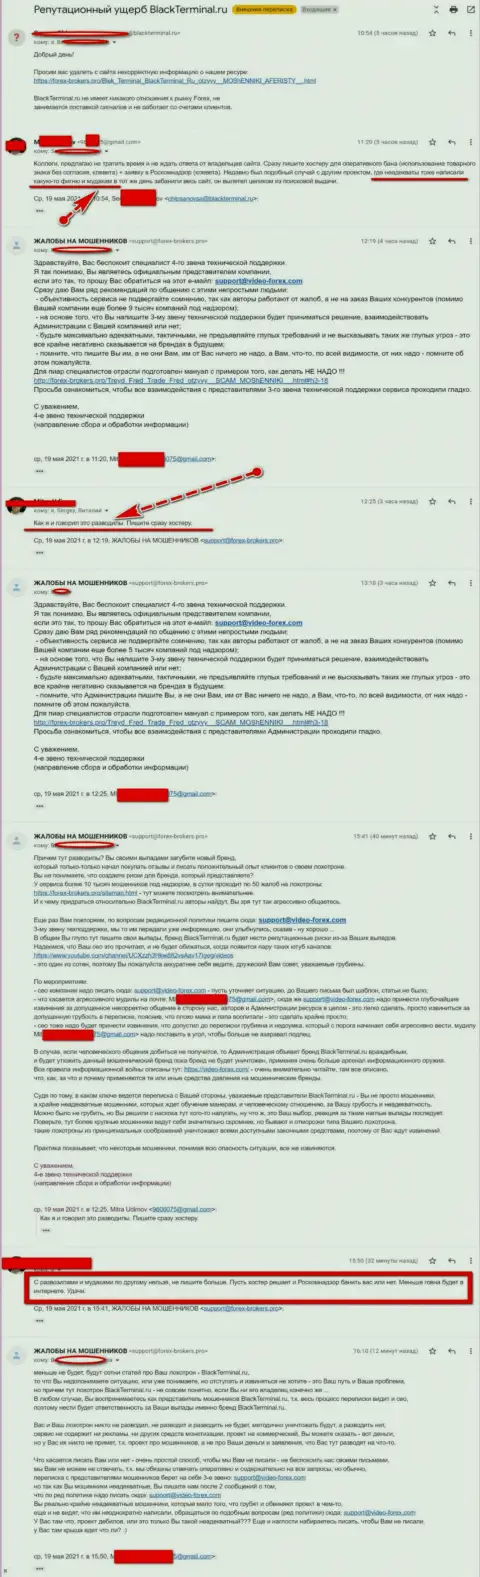 Онлайн переписка Администрации сайта, с высказываниями о BlackTerminal, с представителями указанного противозаконно действующего онлайн сервиса